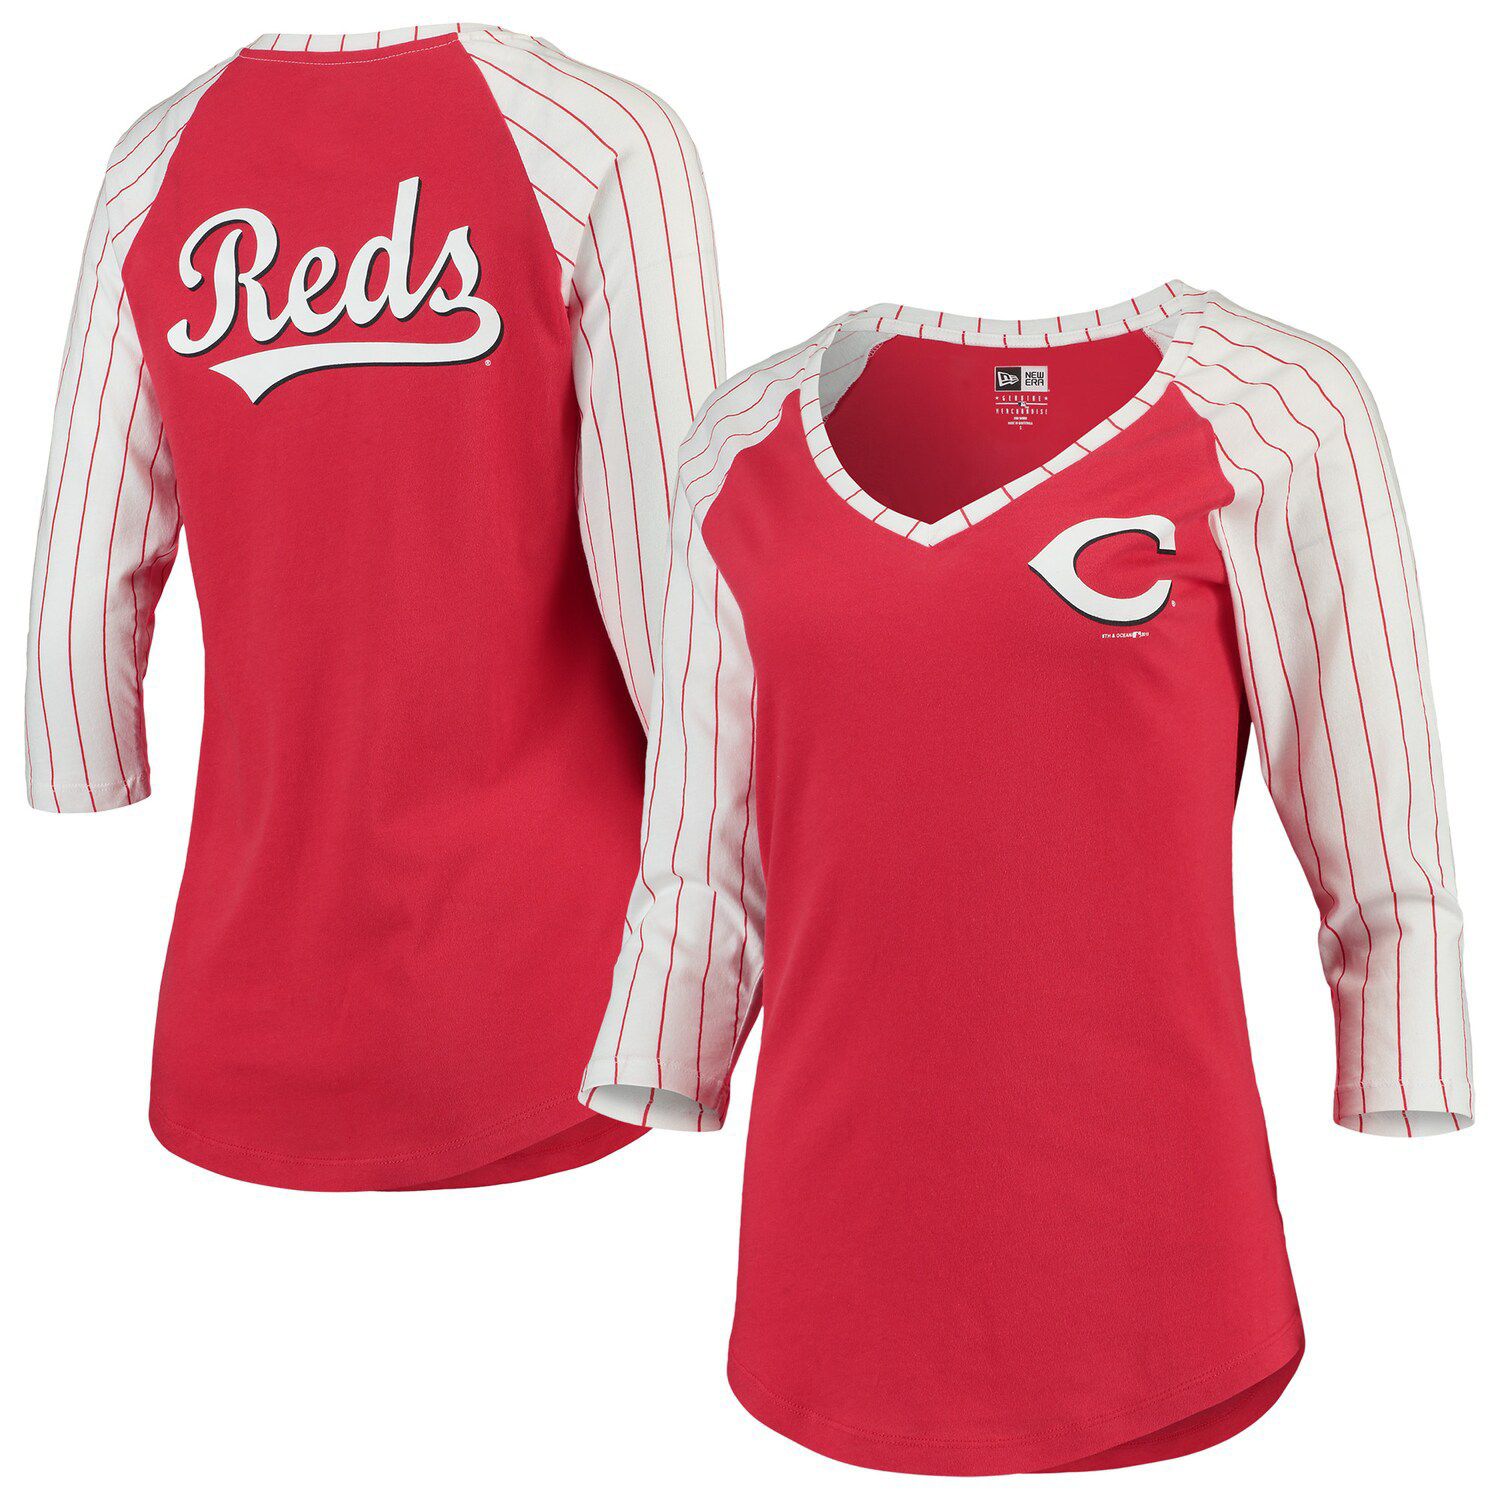 reds jersey women's